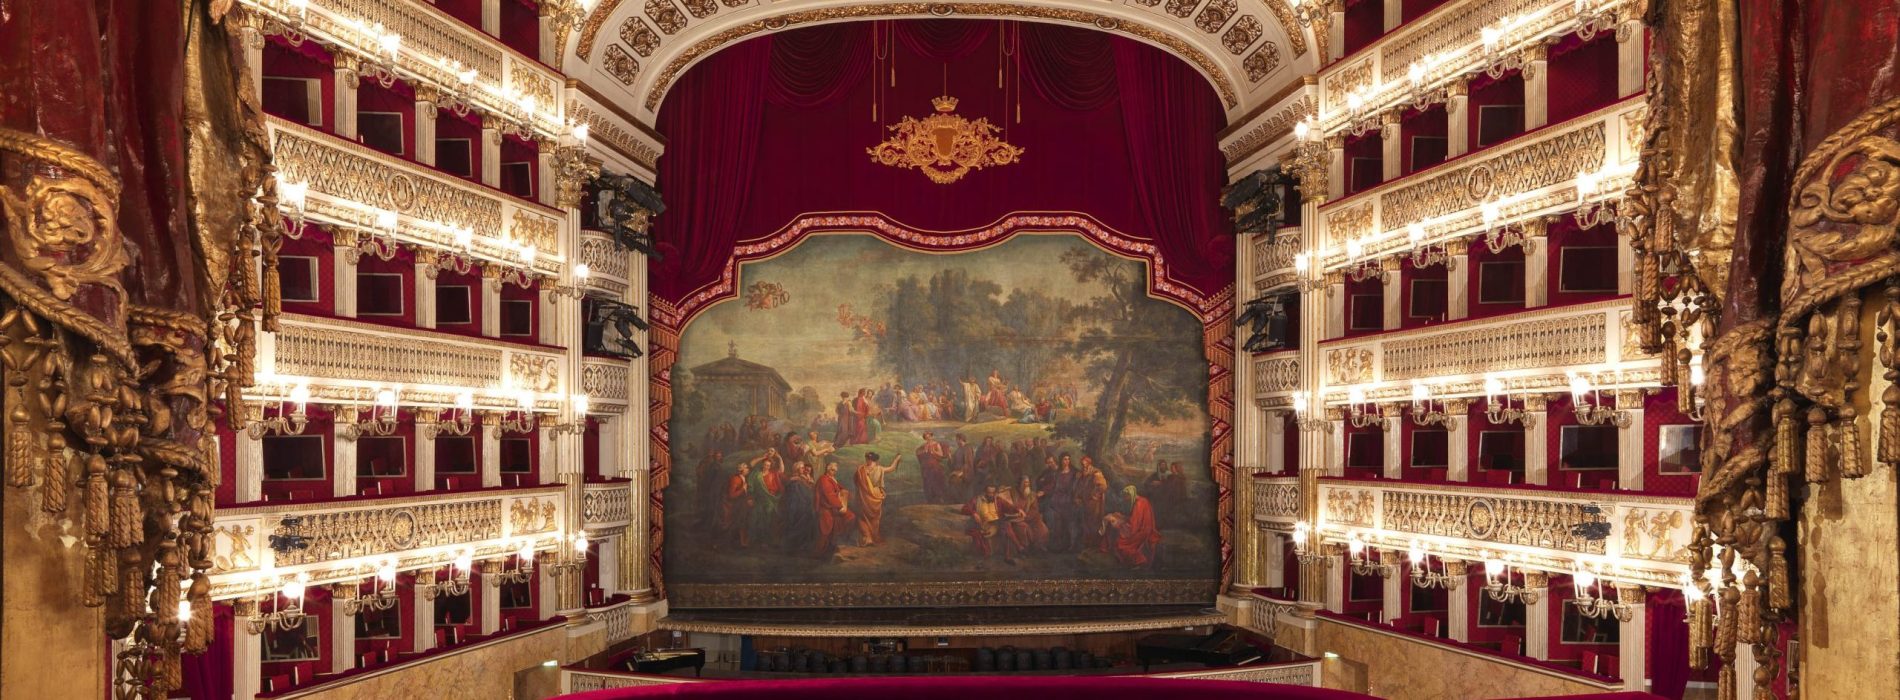 Teatro di San Carlo, con Rigoletto prende il via il nuovo anno